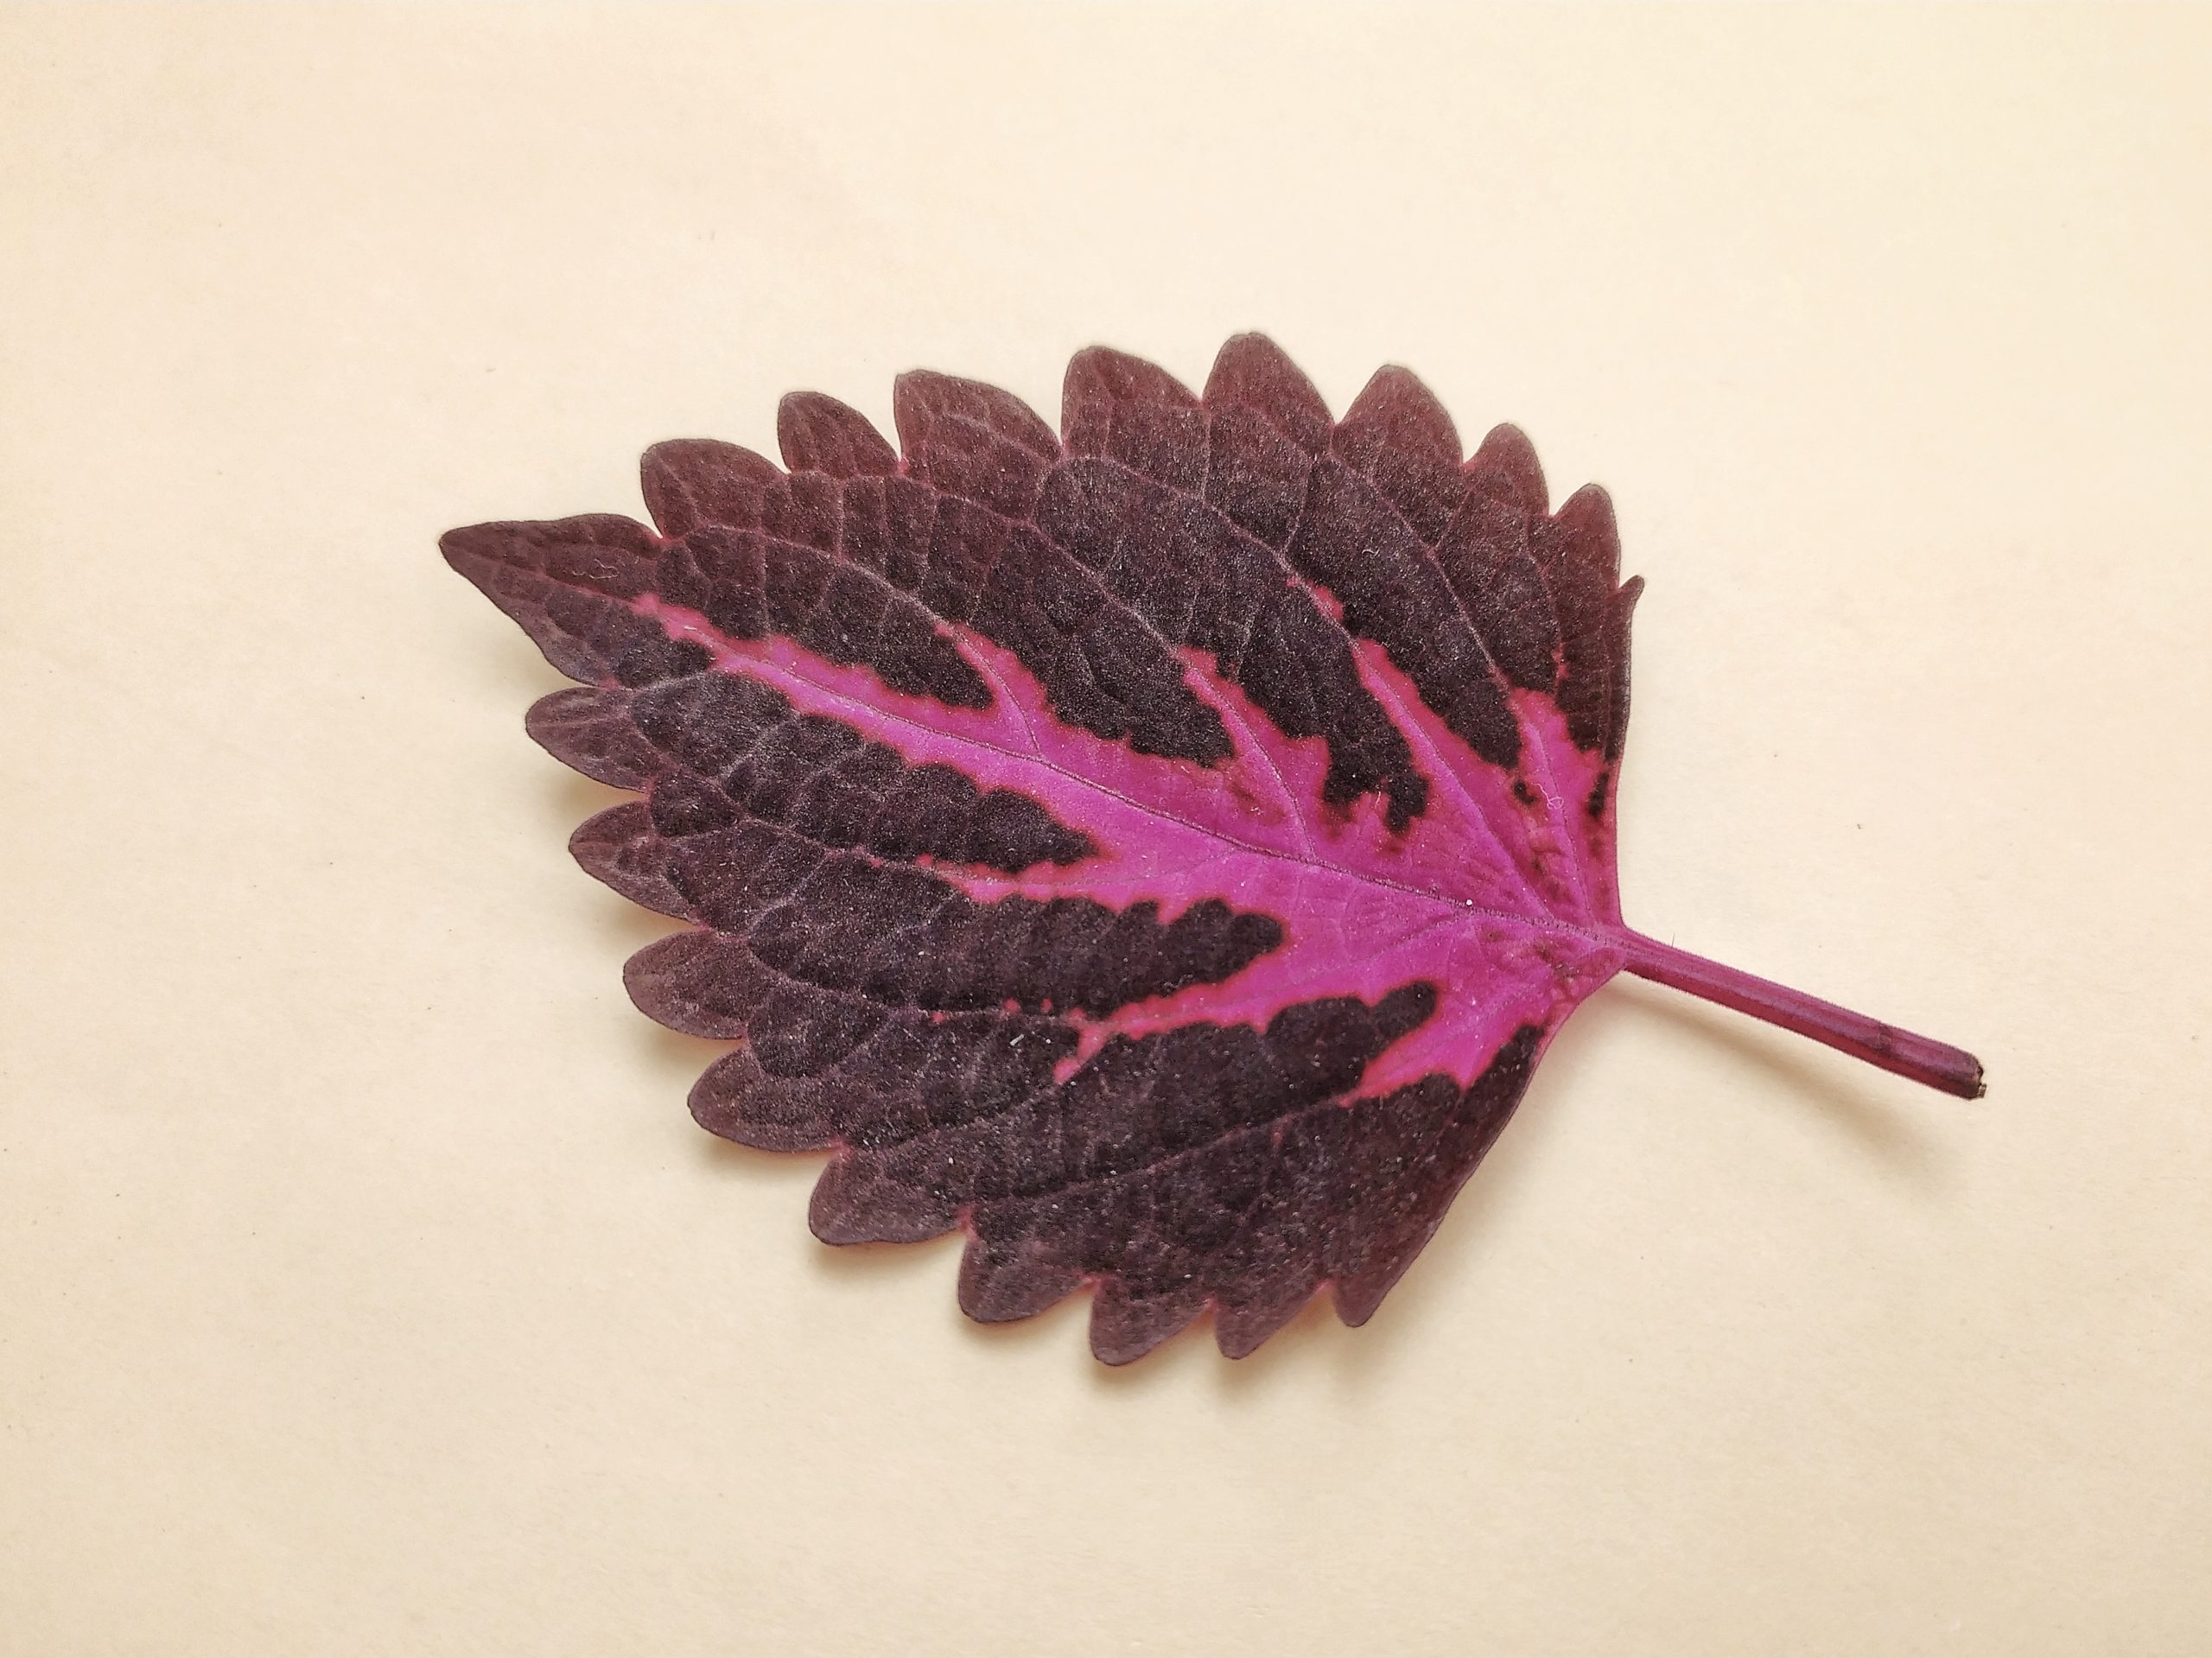 A coleus leaf